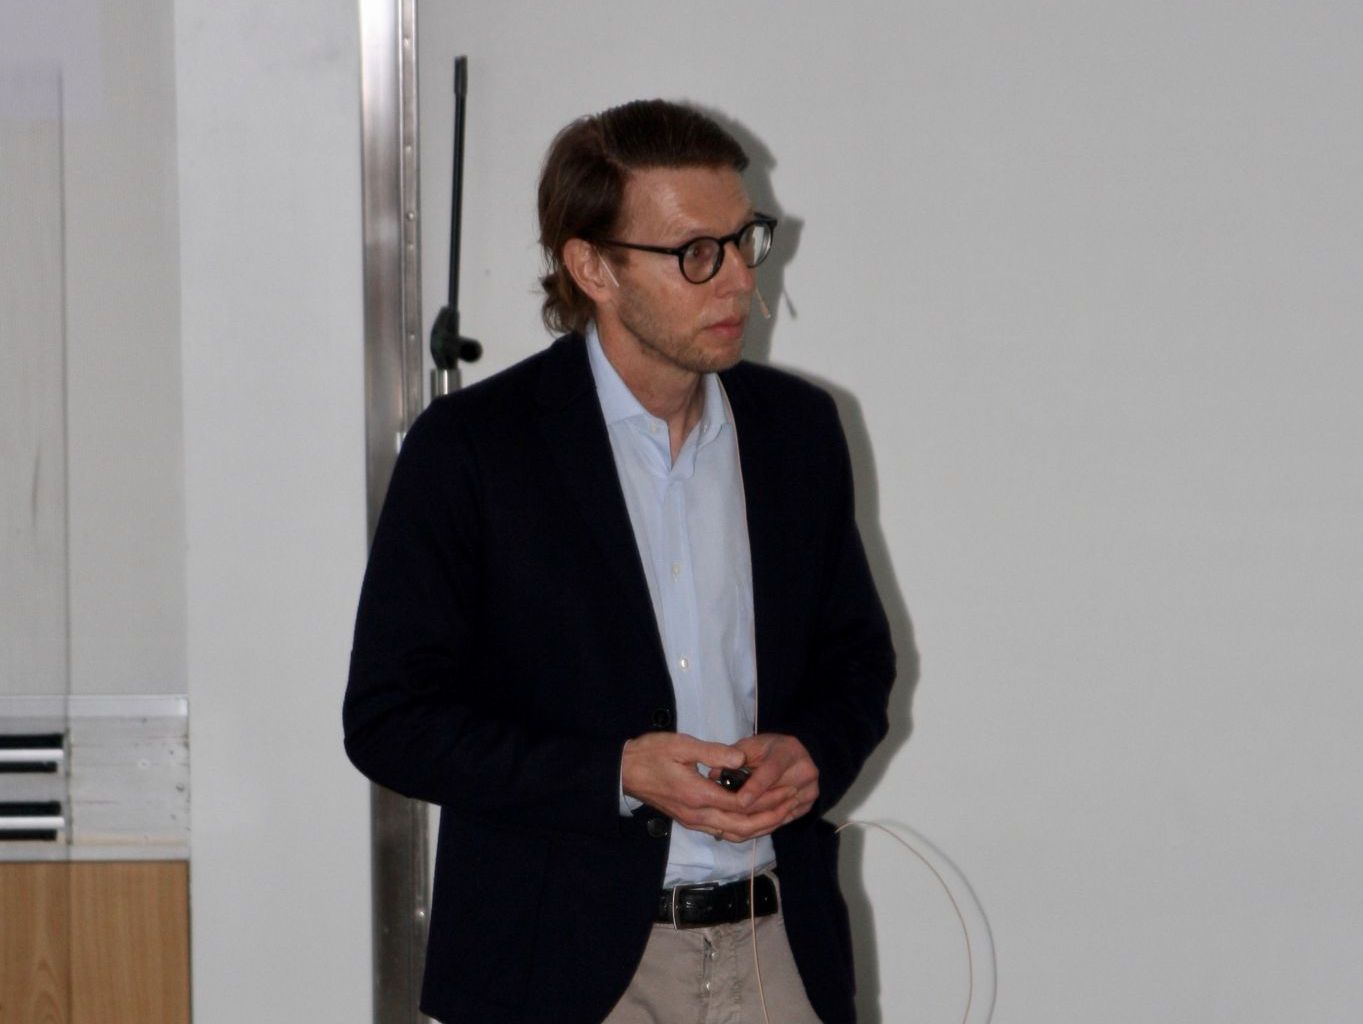 Clemens Schulze-Briese présente les rayons X dans l'industrie et la société lors du symposium Röntgen 2021.